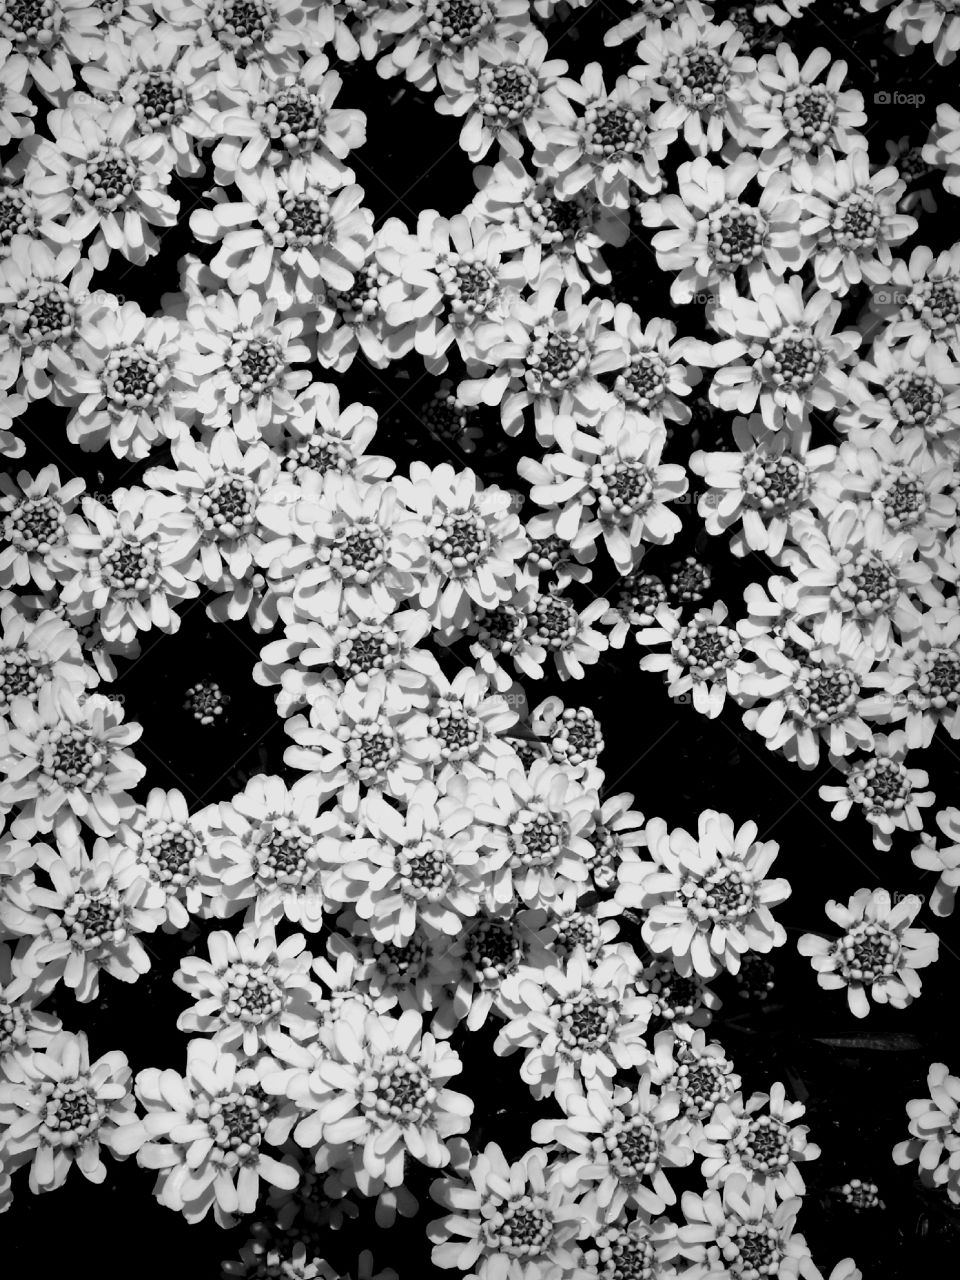 White carpet of flowers.